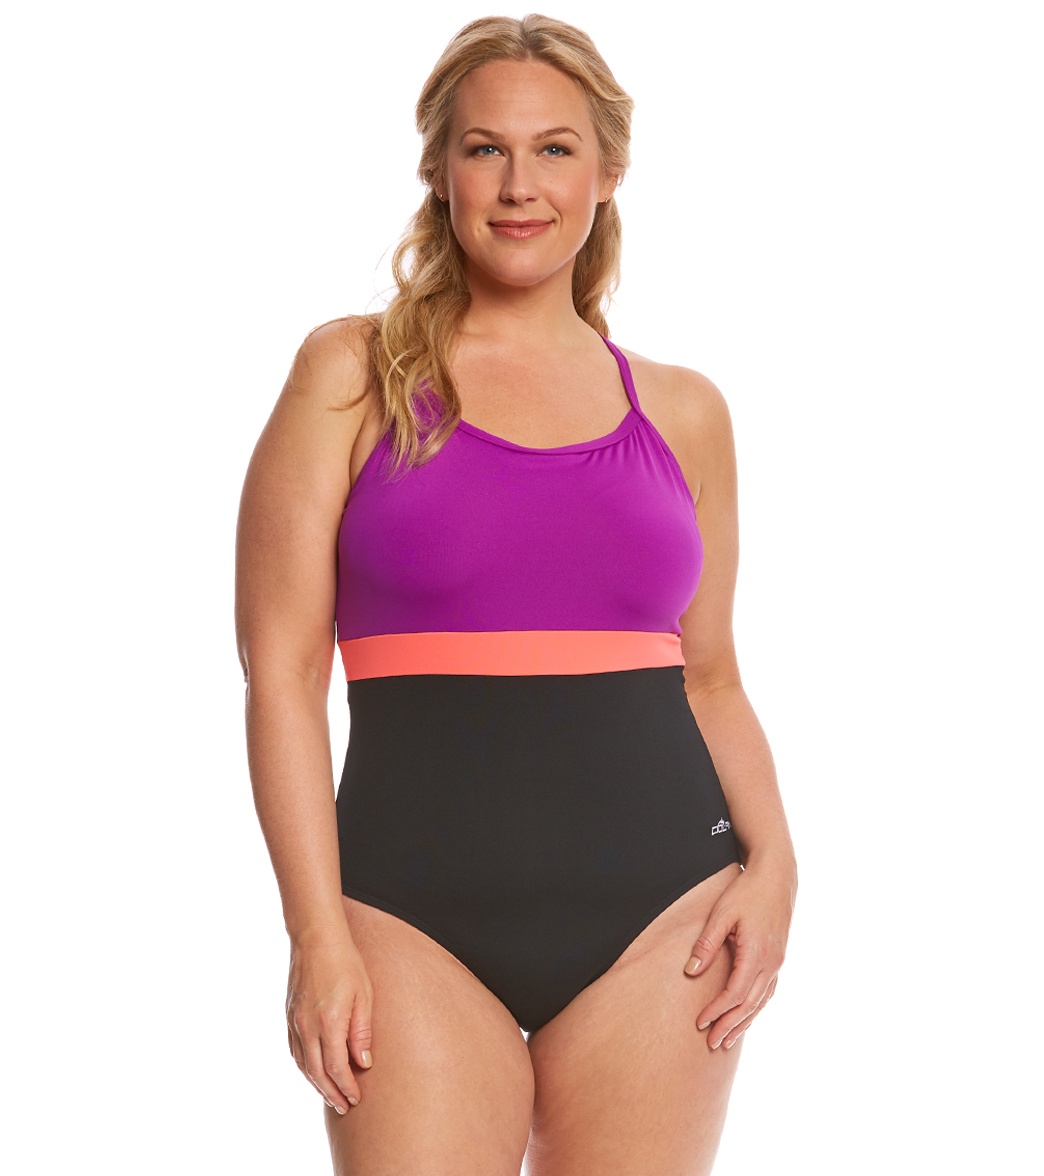 Dolfin Aquashape Women's Plus Size Cross Back One Piece Swimsuit - Black/Purple/Coral 22 Polyester/Spandex - Swimoutlet.com